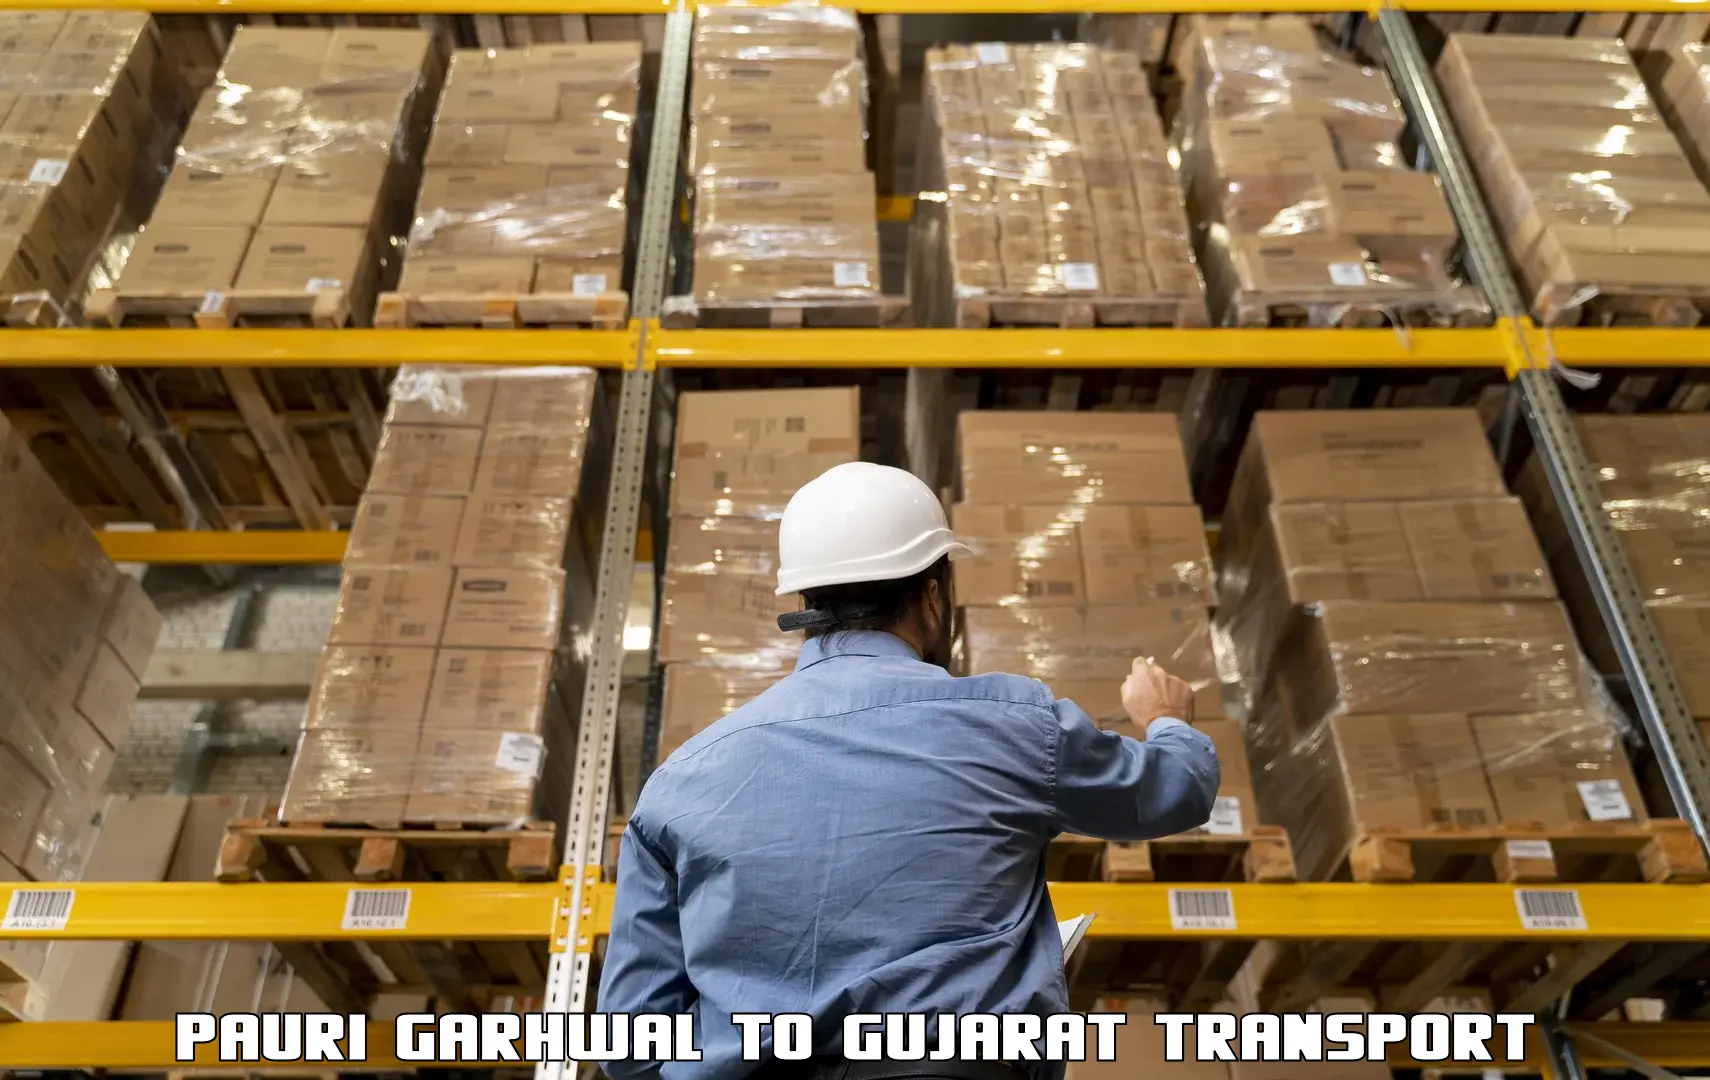 Daily transport service Pauri Garhwal to Kalol Gujarat